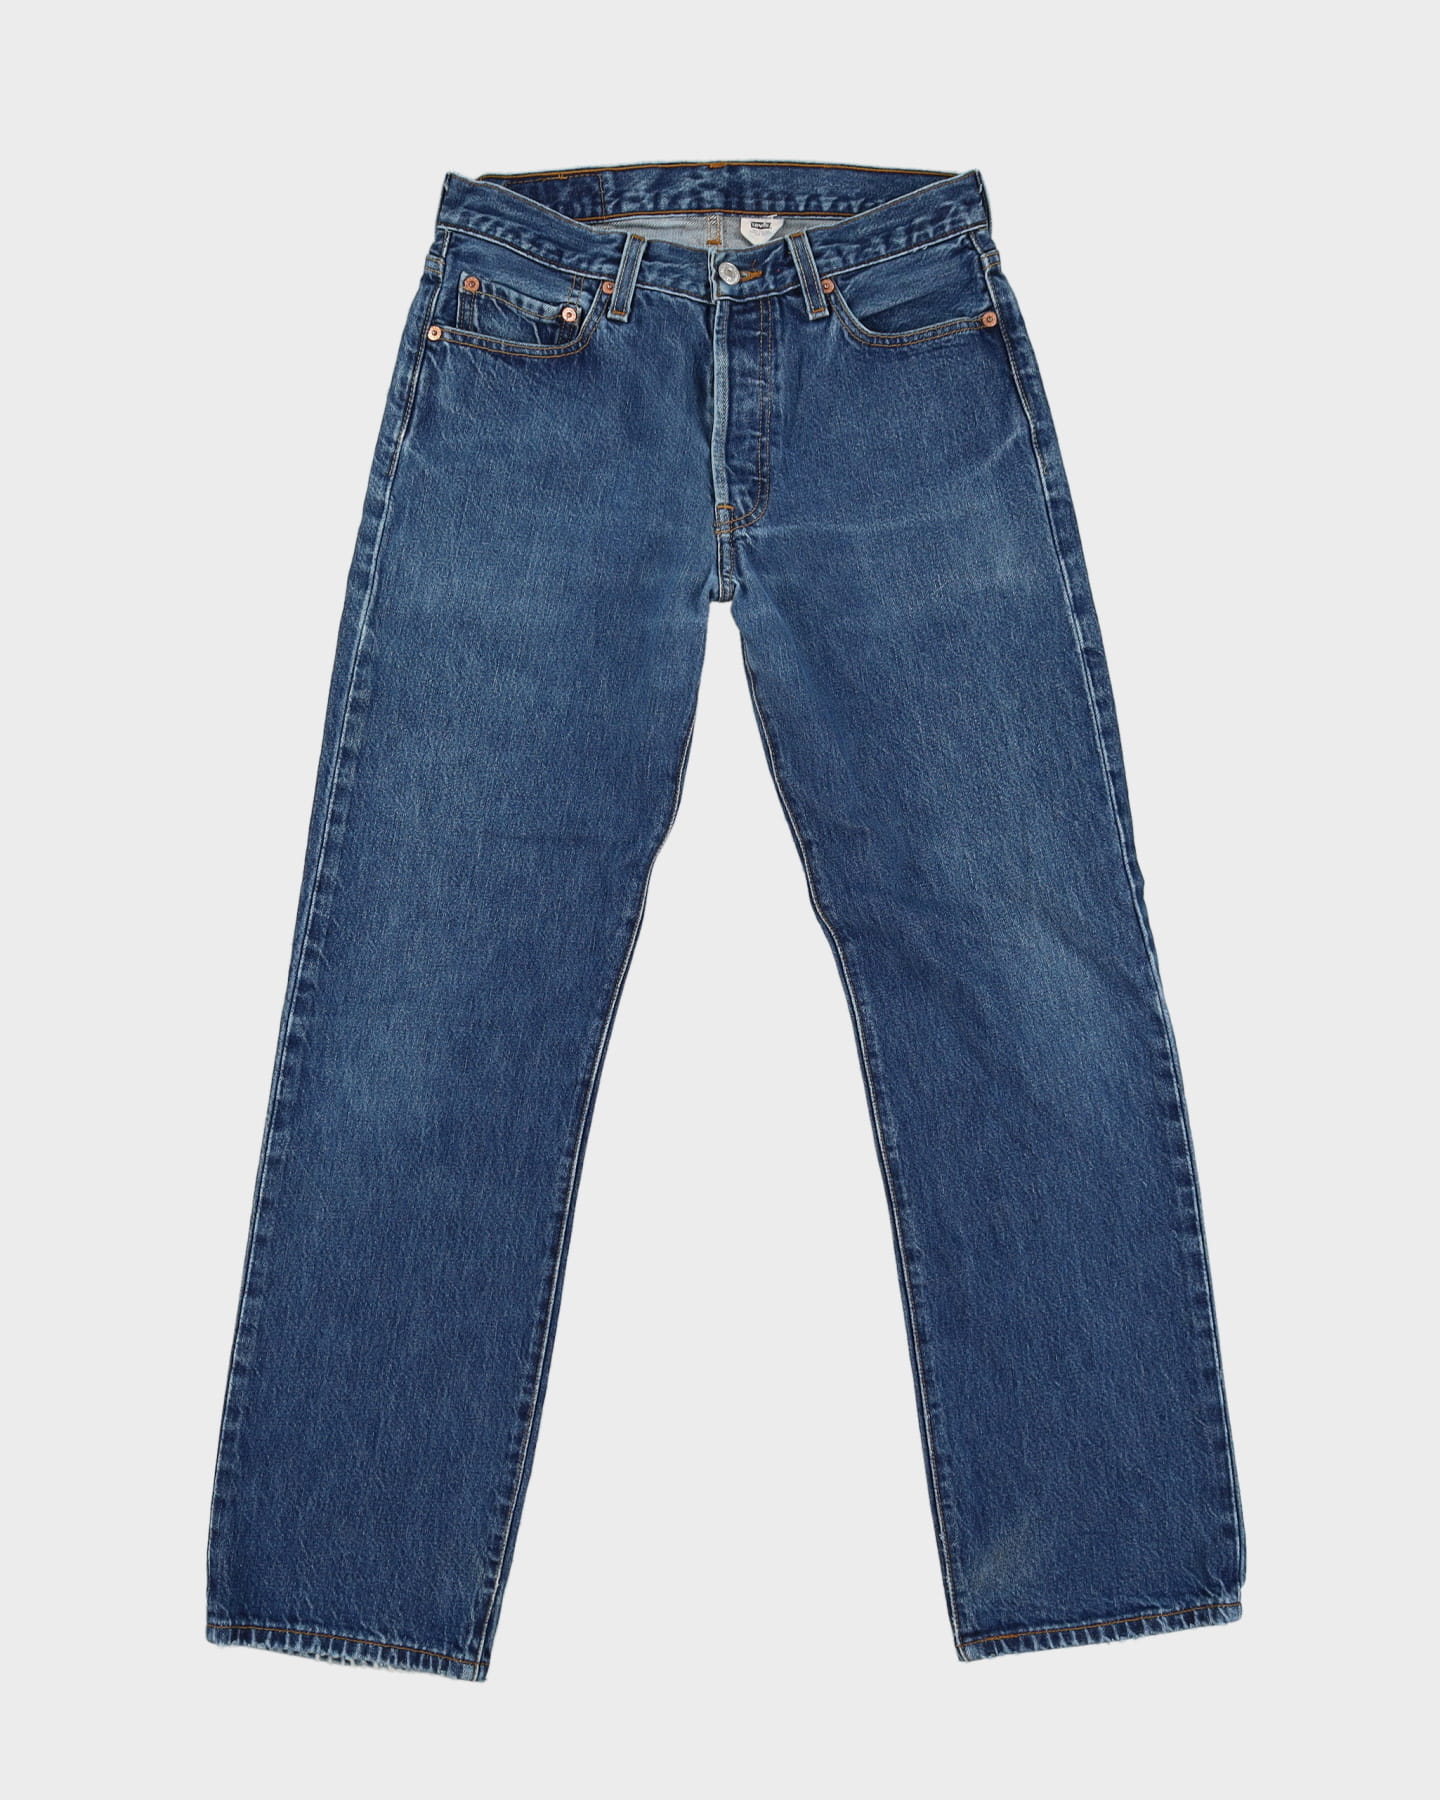 Vintage 80s Levi's 501 Blue Jeans - W30 L30